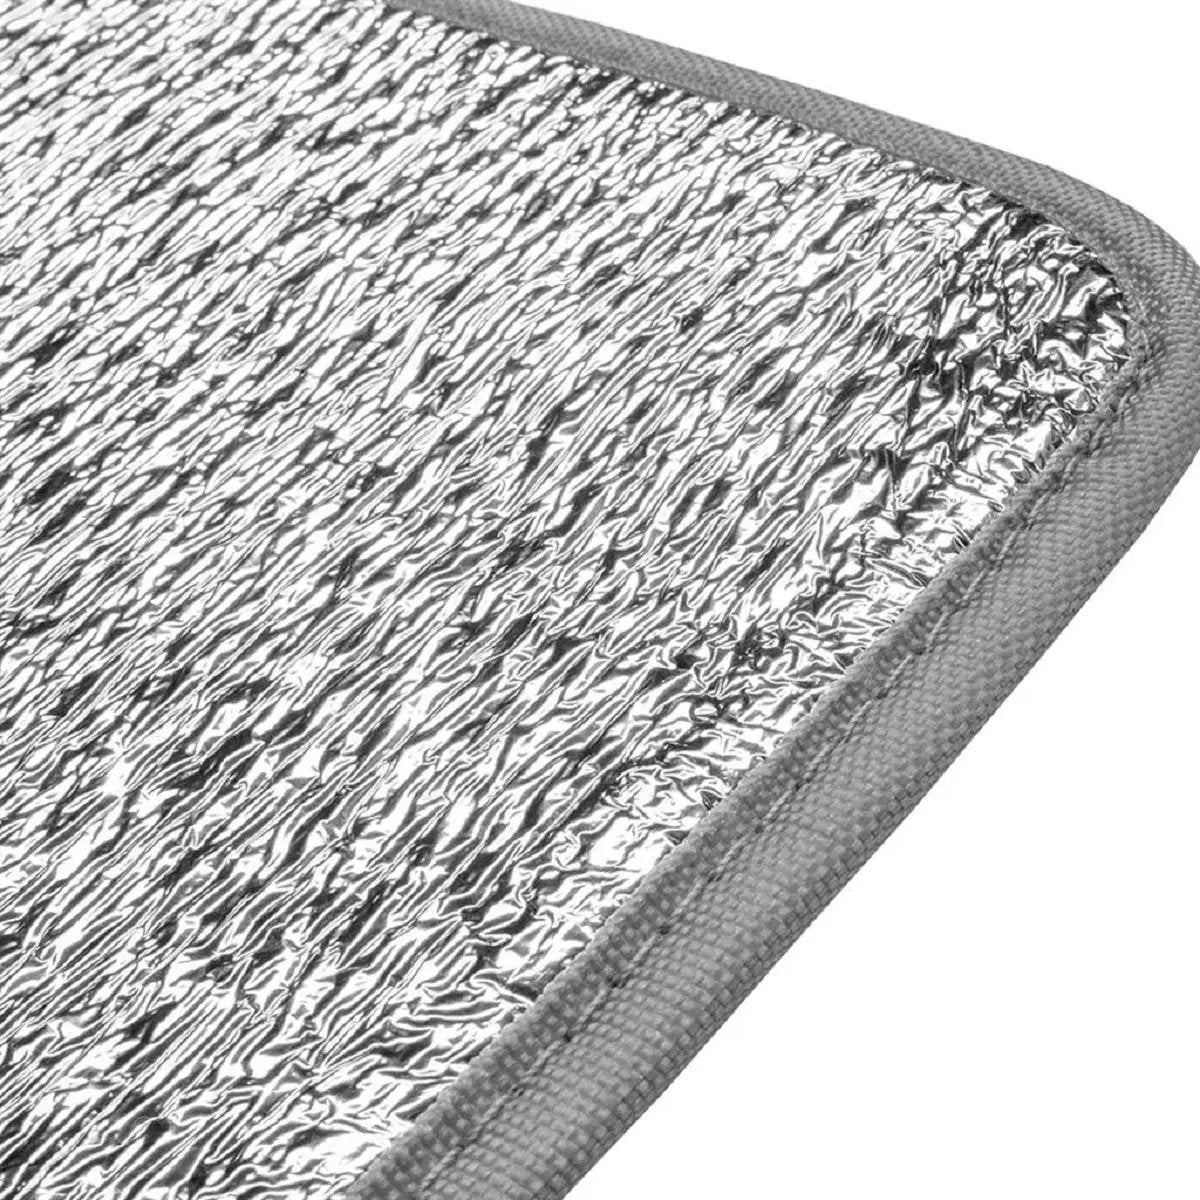 Rootit isolant pour tapis chauffant de 60x40cm en culture indoor